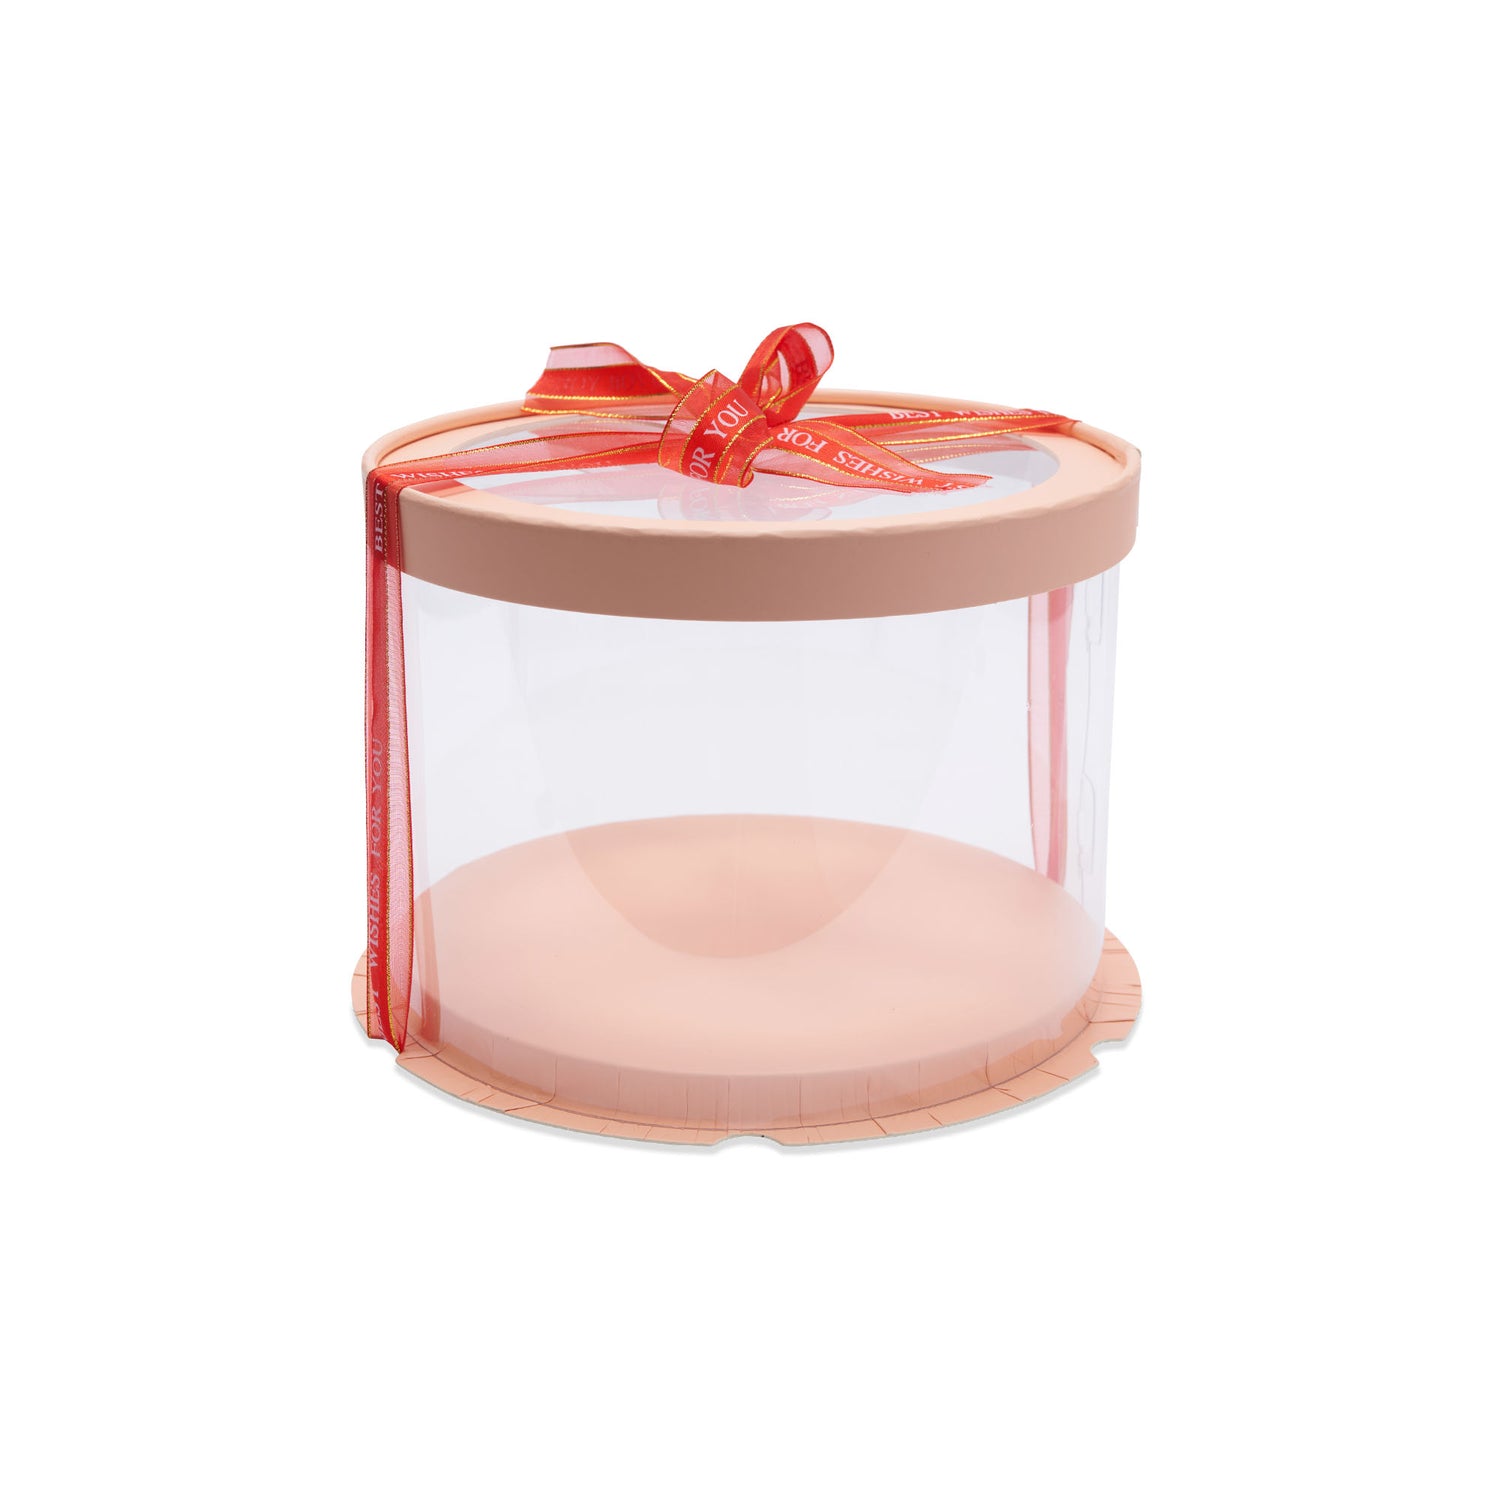 Medium Cake Box With Transparent Lid